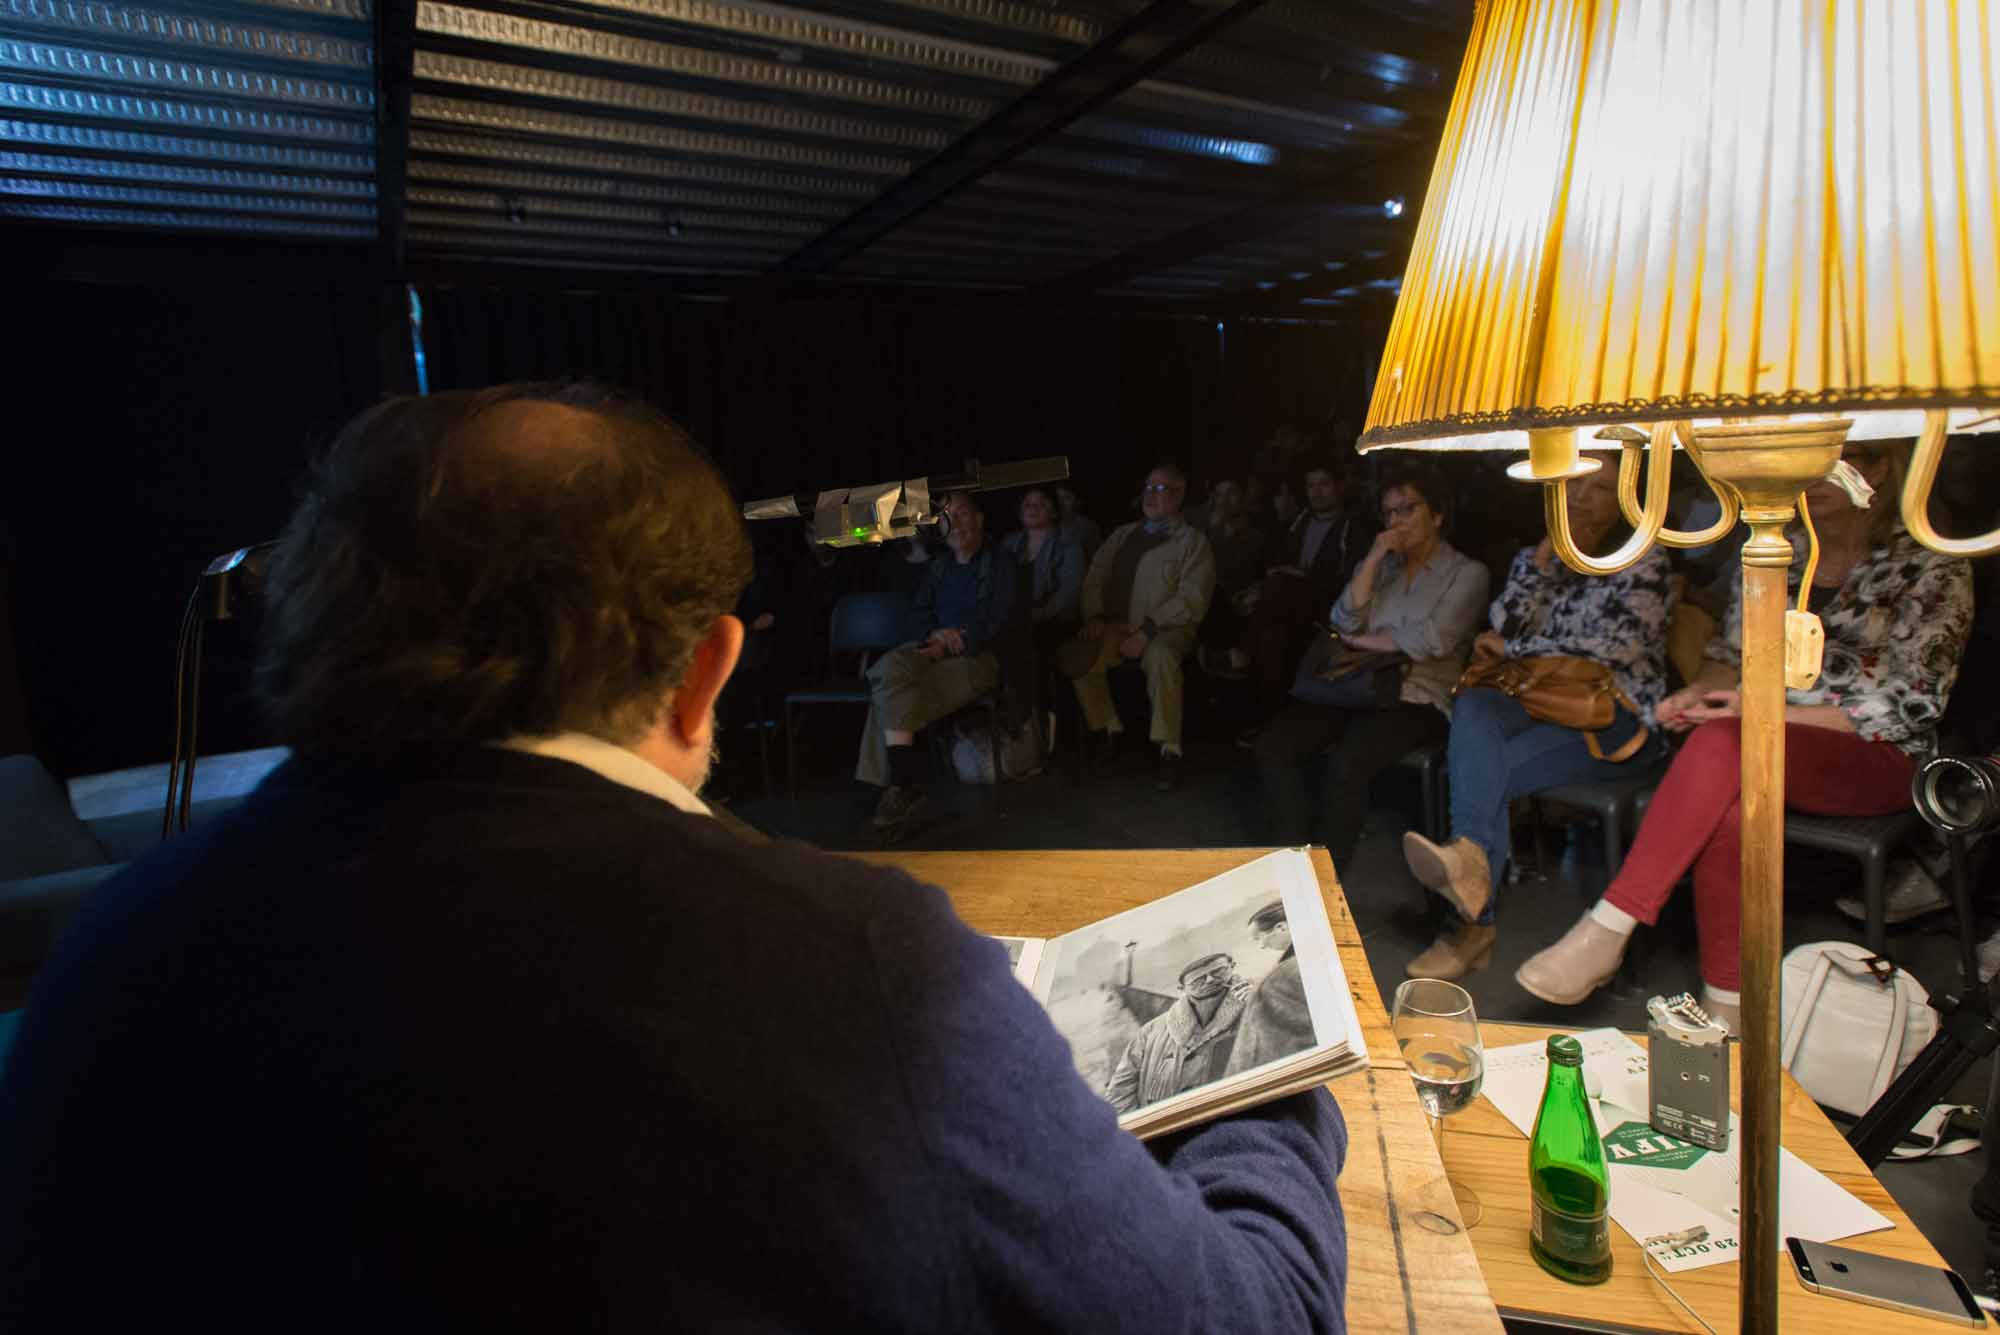 Luis Poirot, fotógrafo chileno participa en Díalogos Fotográficos en el Restaurant El Internado en el marco de la 7ª edición del Festival Internacional de Fotografía en Valparaíso, FIFV 2016. ©Ignacio Lamas